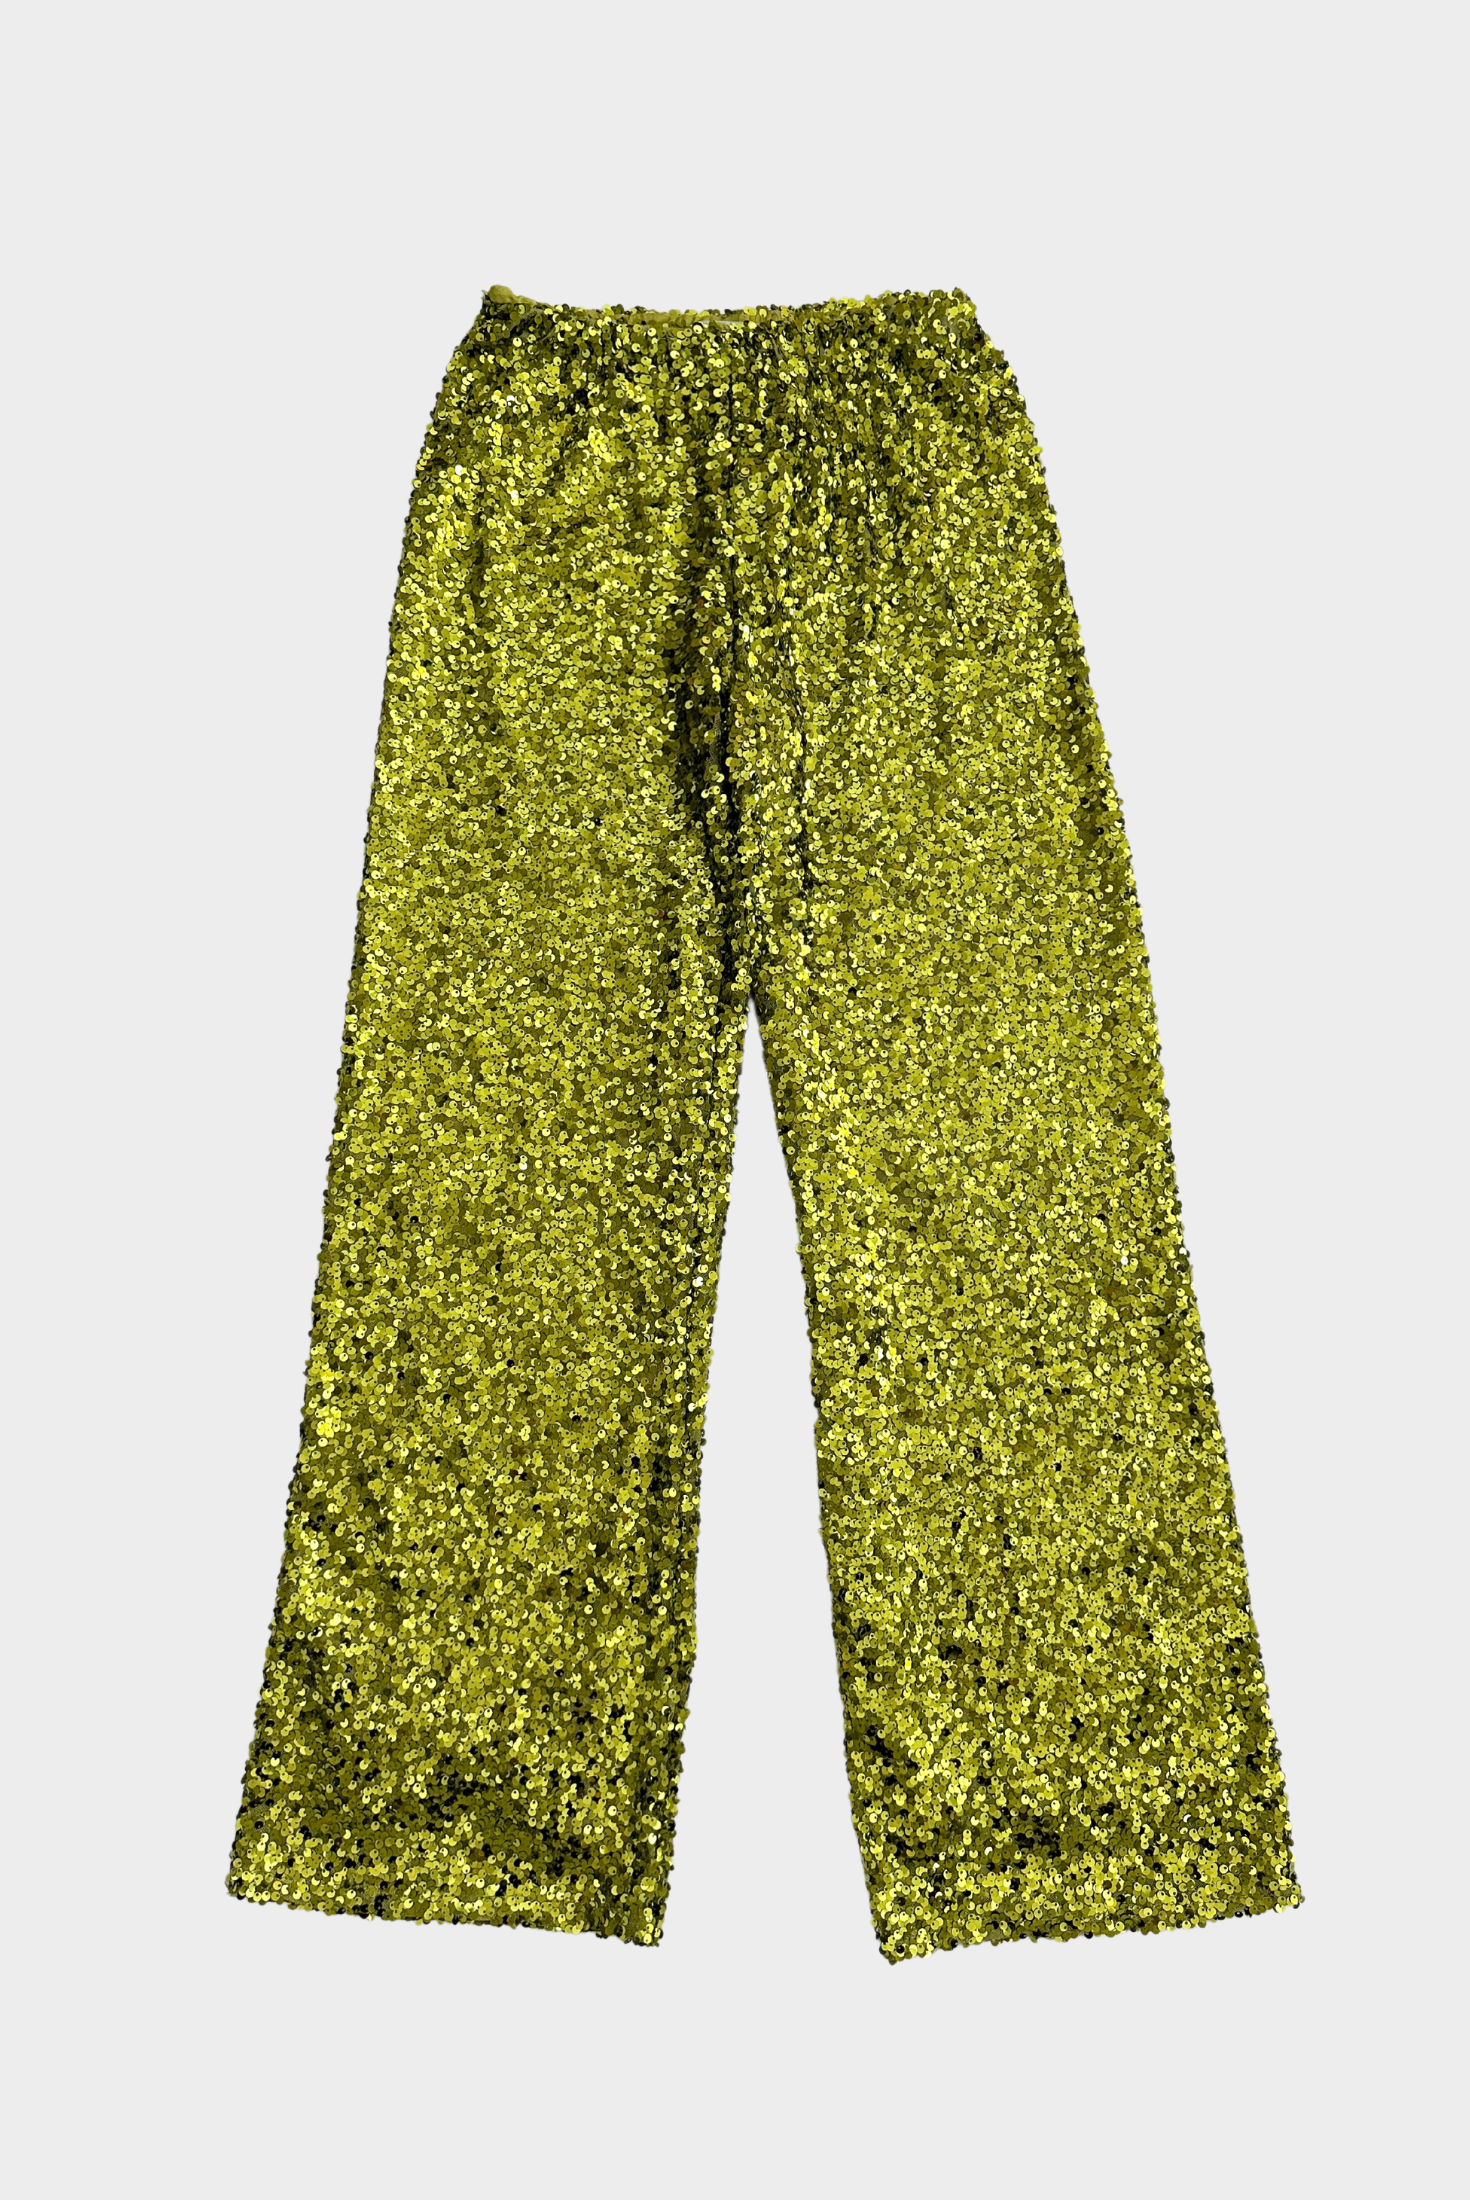 מכנס פייטים בצבע ירוק